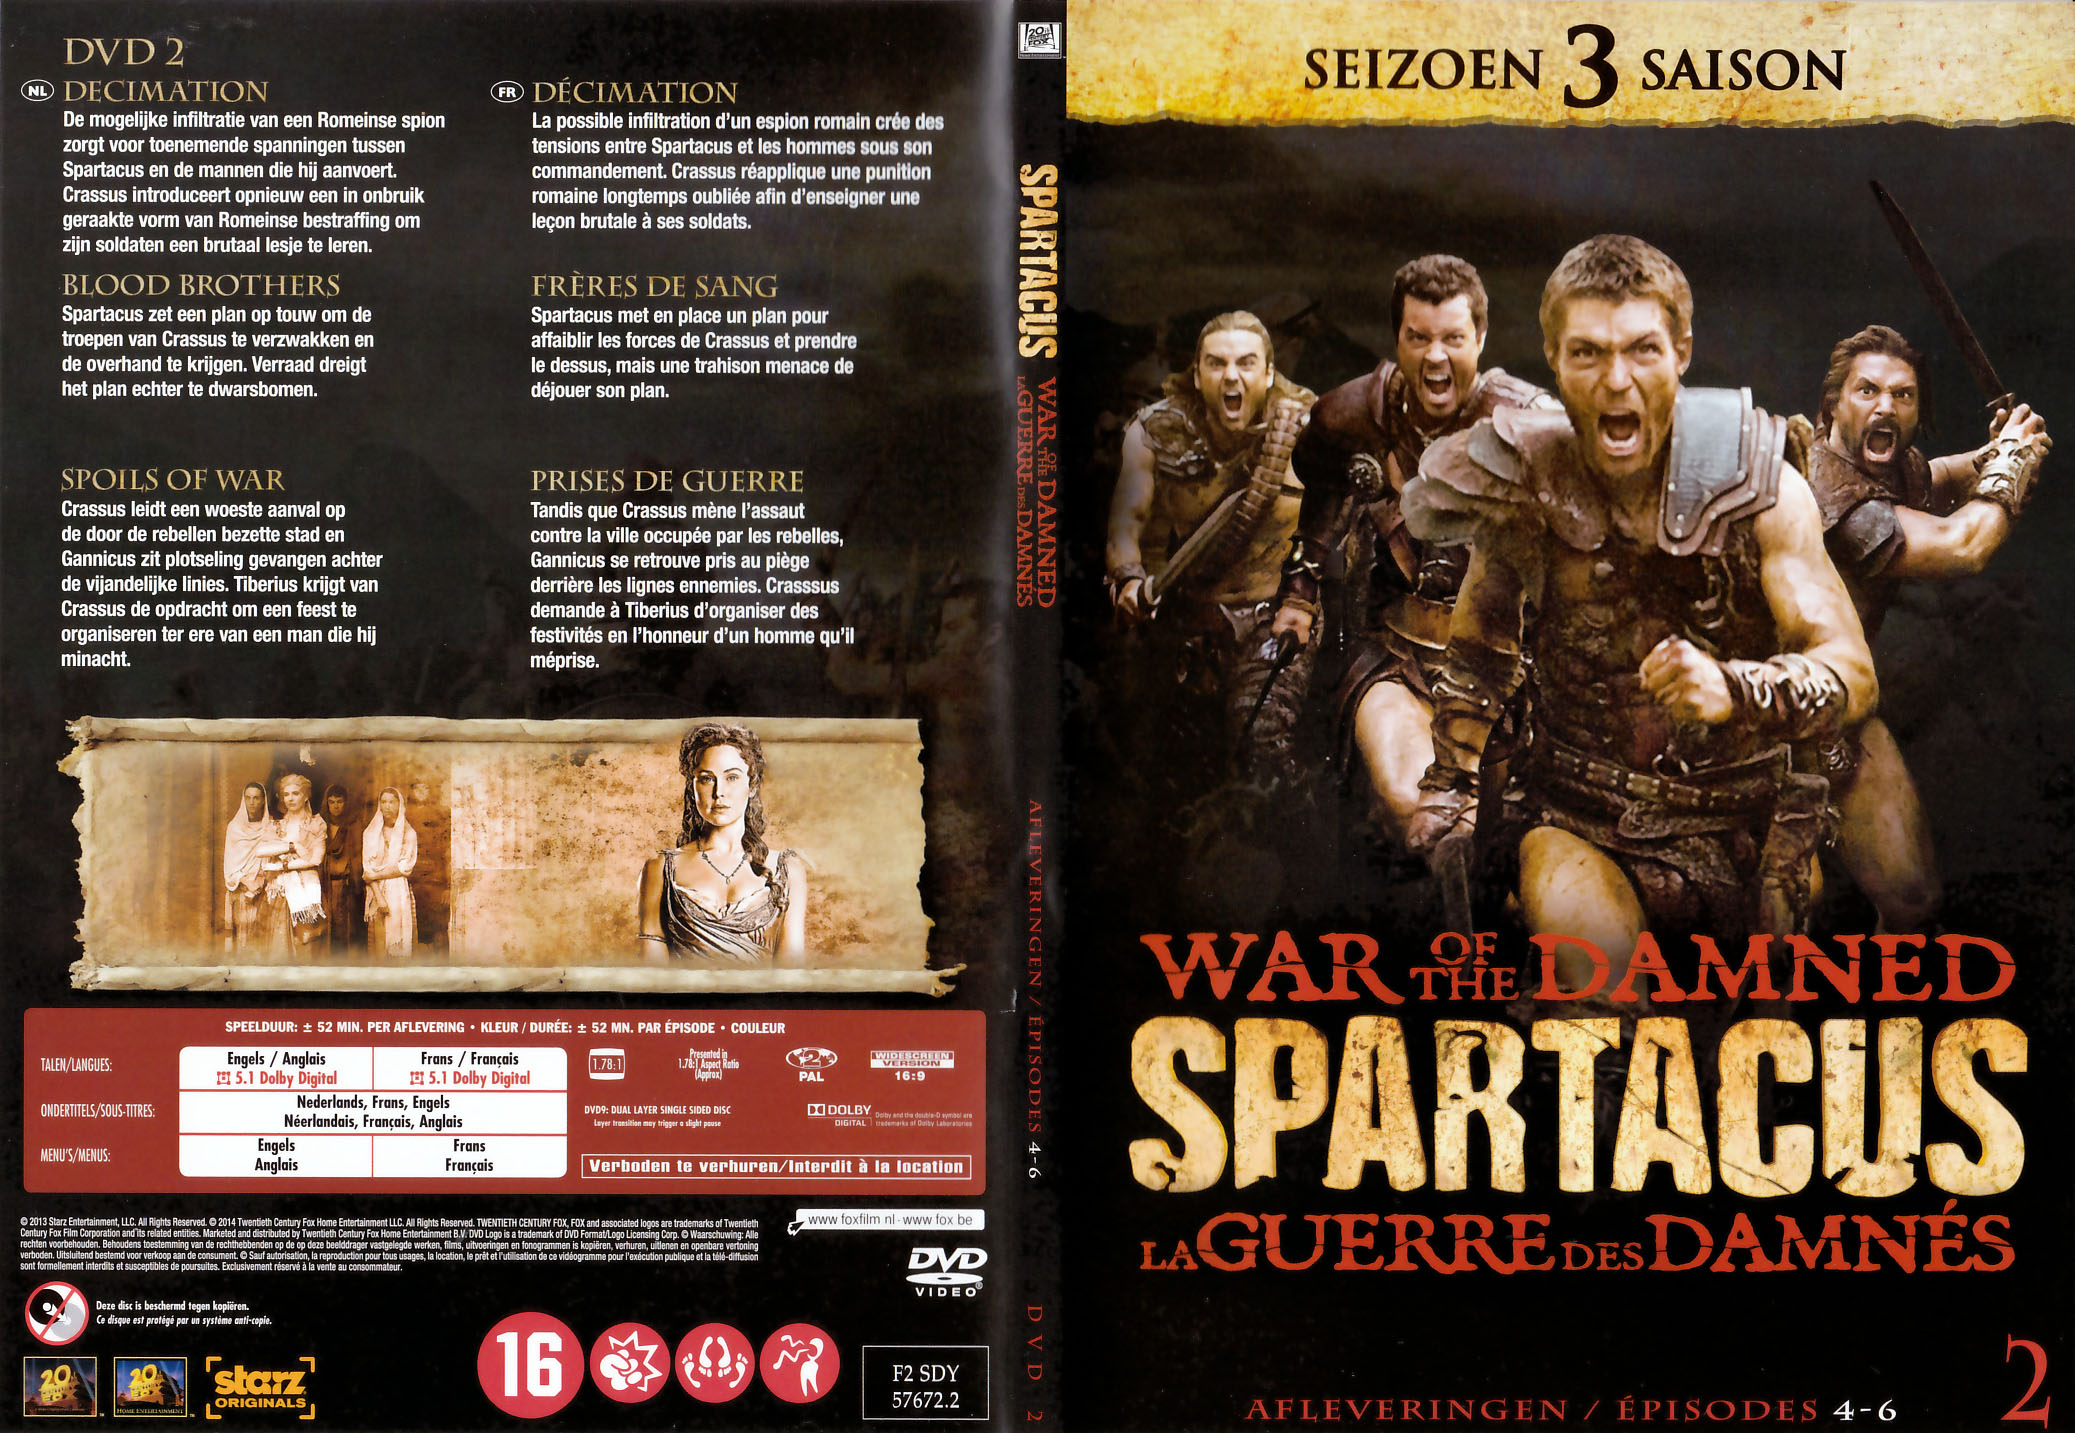 Jaquette DVD Spartacus La guerre des damnés Saison 3 DVD 2